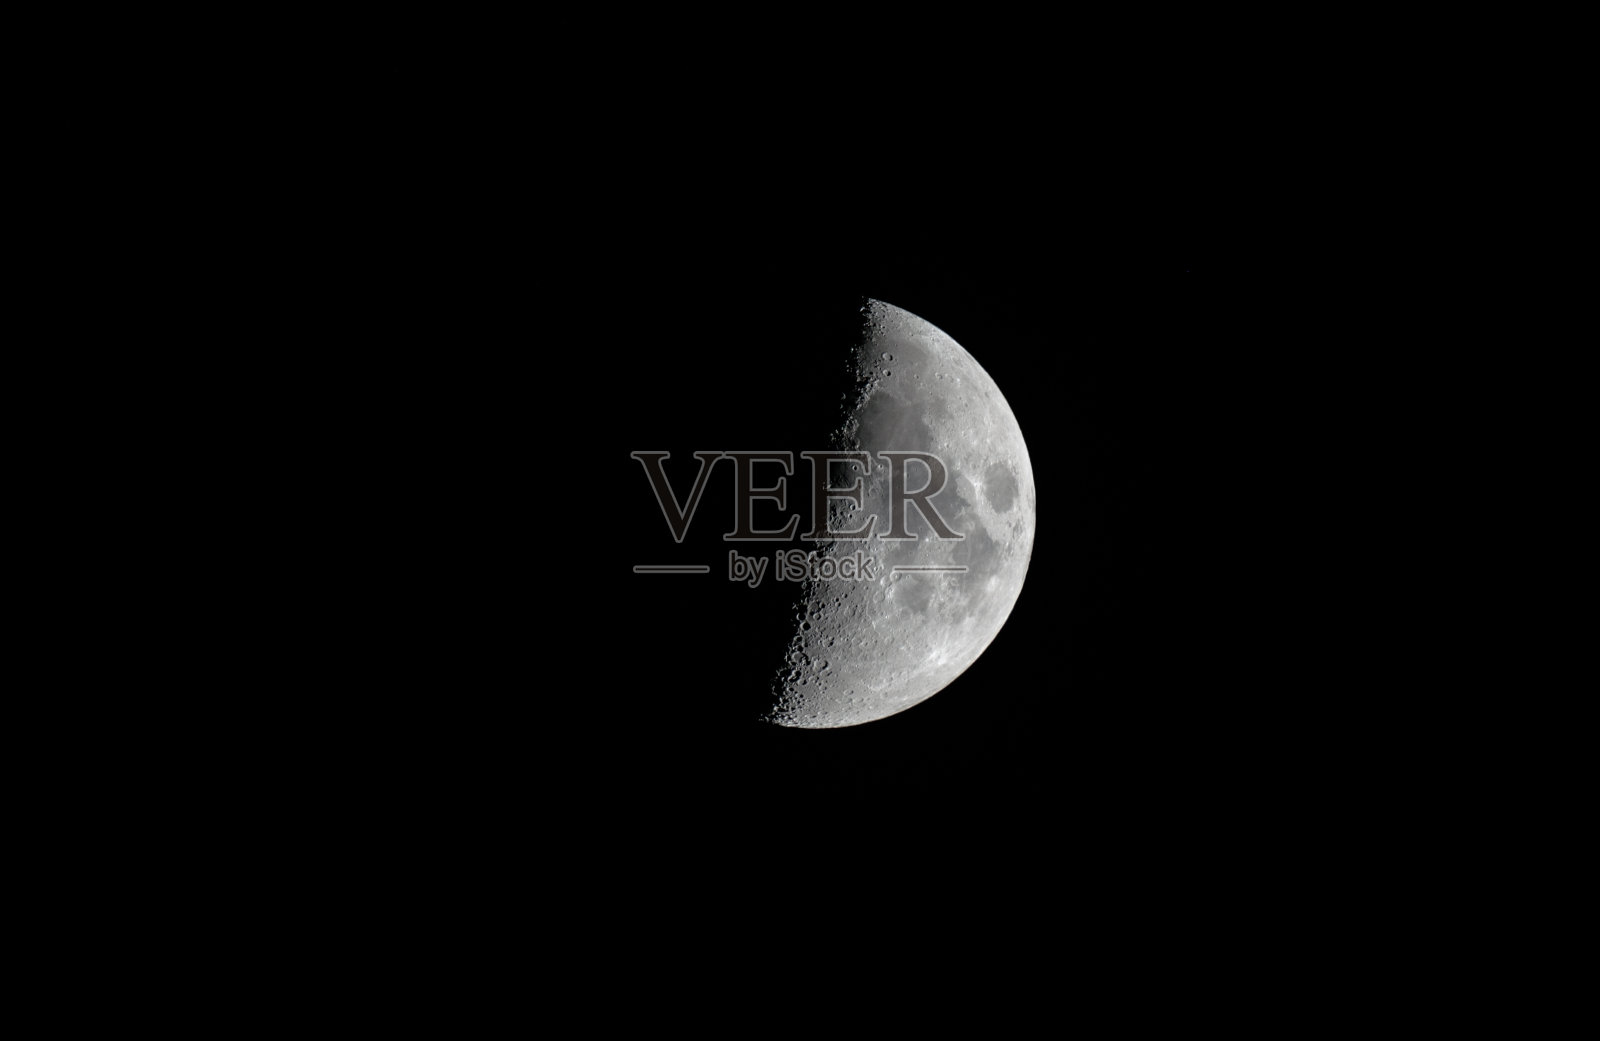 黑色夜空中的半月形月亮照片摄影图片